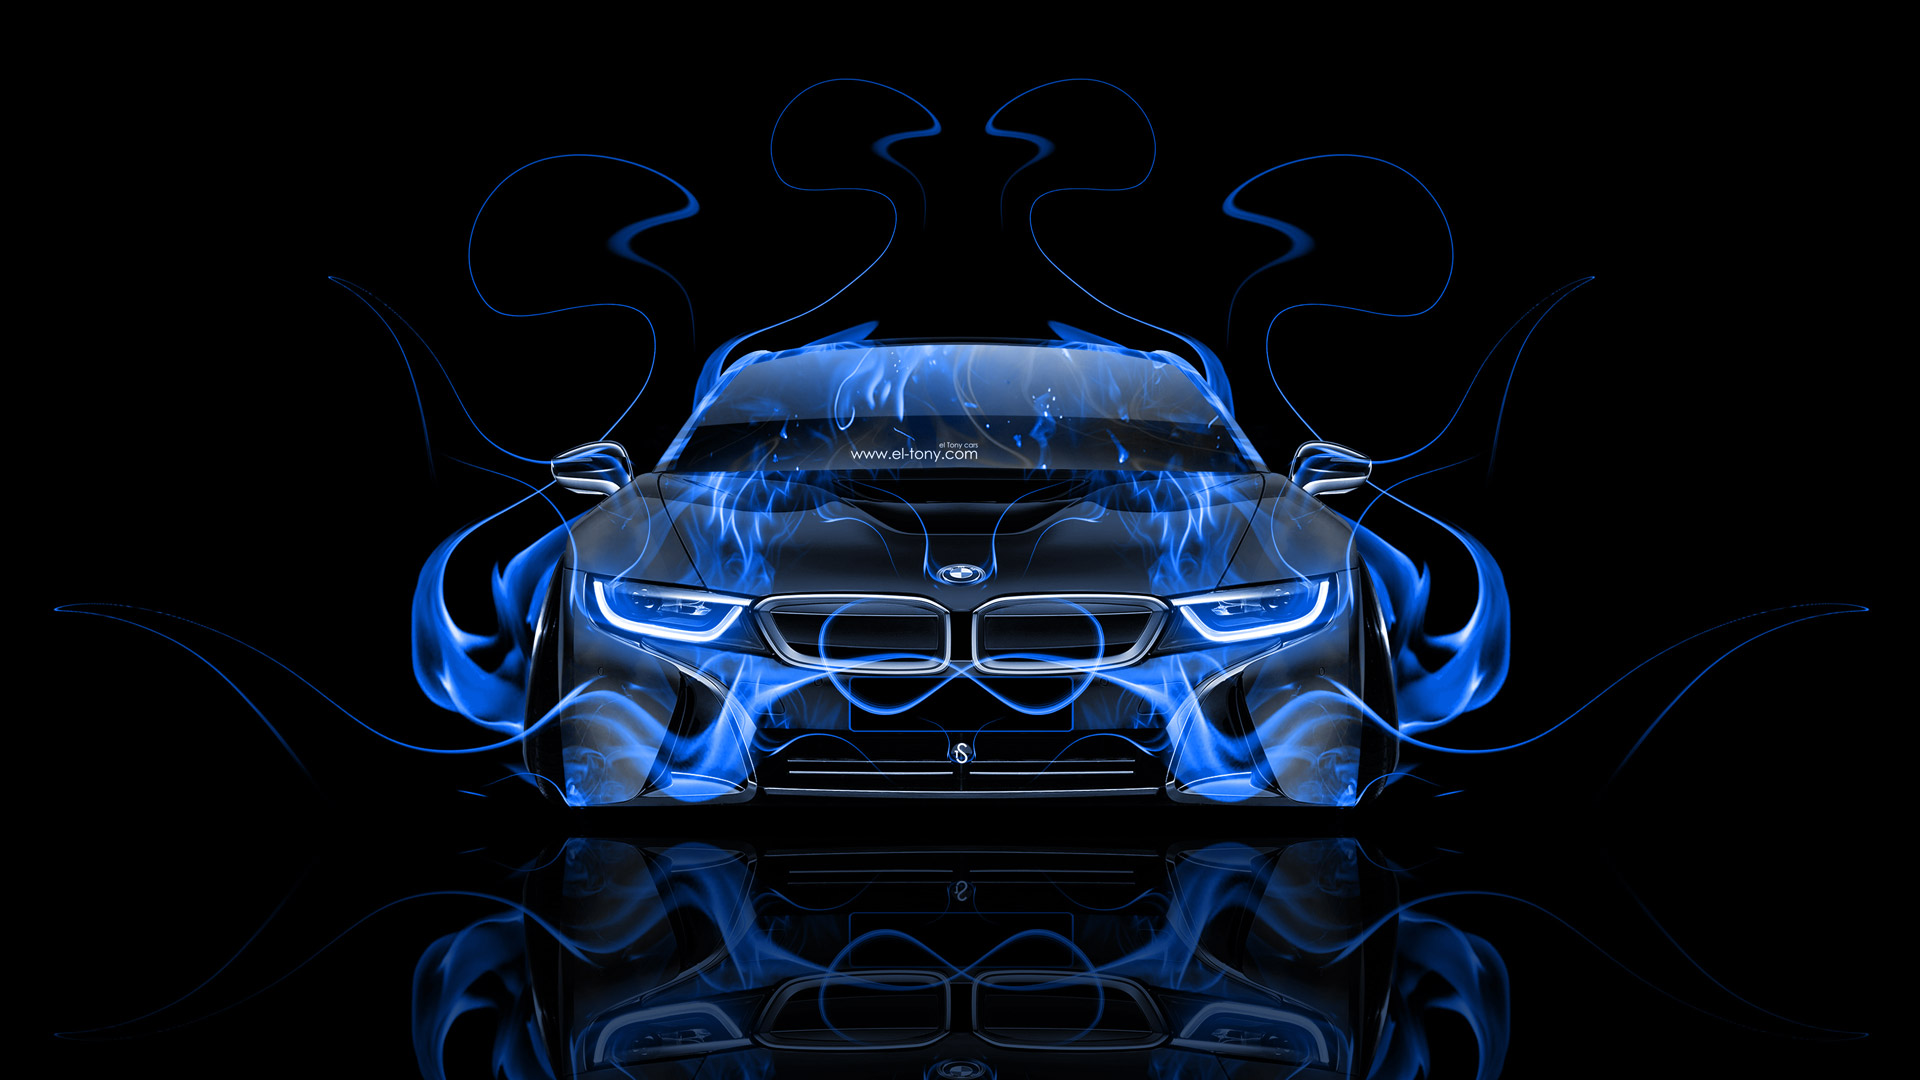 Bmw I8 Front Fire Abstract Car El Tony